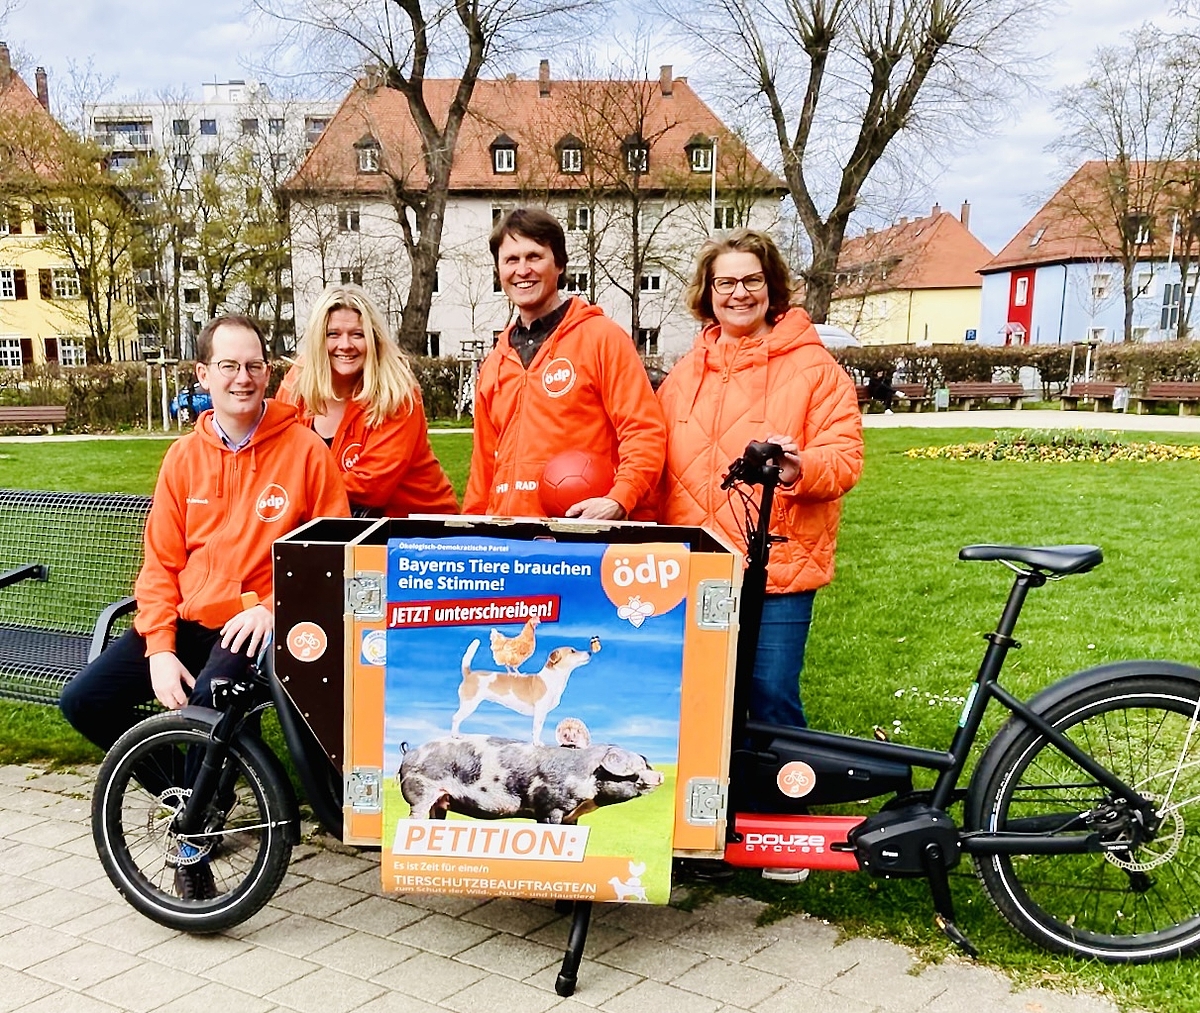 Das Foto zeigt vier erwachsene Personen in oranger Kleidung (mit ÖDP-Logo) und ein Lastenrad, im Hintergrund eine Wiese mit Blumen (Ohmplatz) sowie Bäume und Häuser. Auf dem Lastenrad klebt ein Plakat für die Tierschutz-Petition der ÖDP.